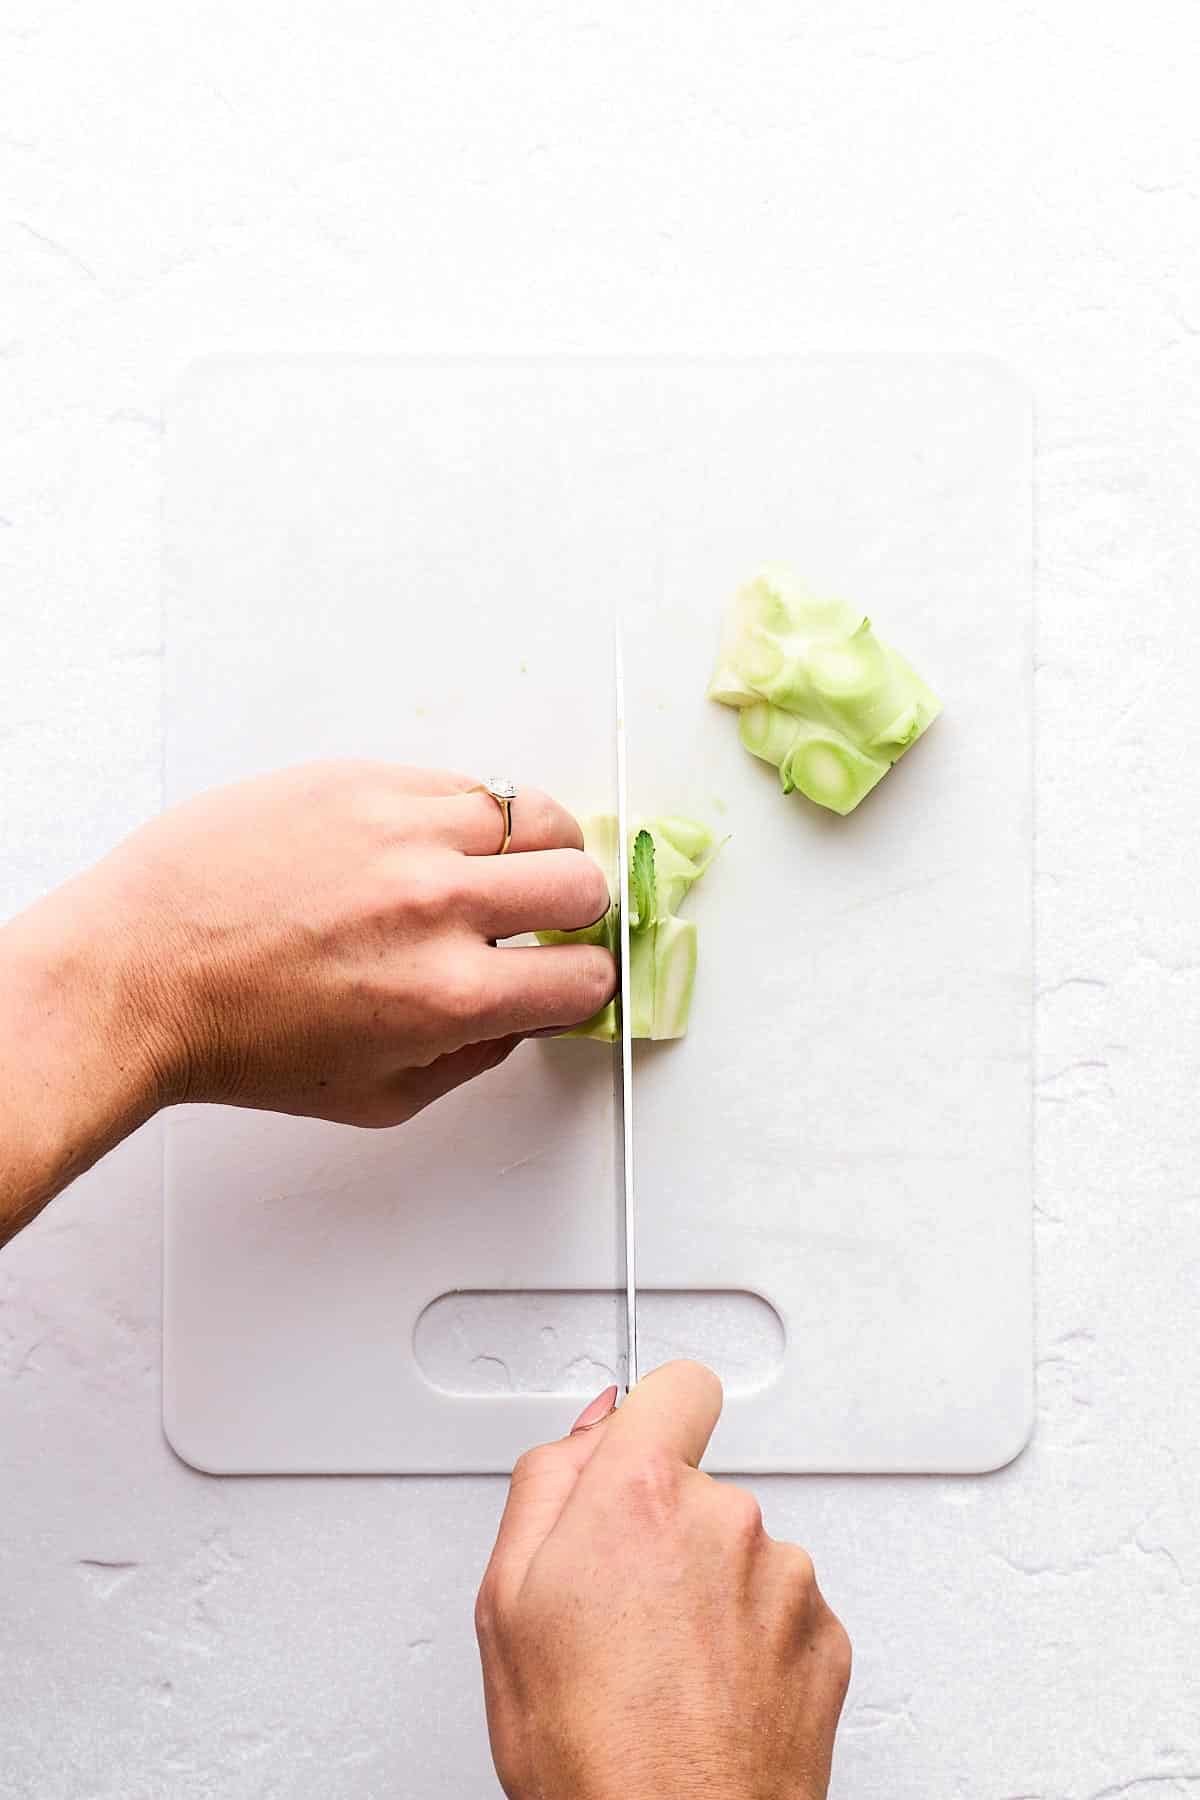 Cutting up a broccoli stem on a cutting board.